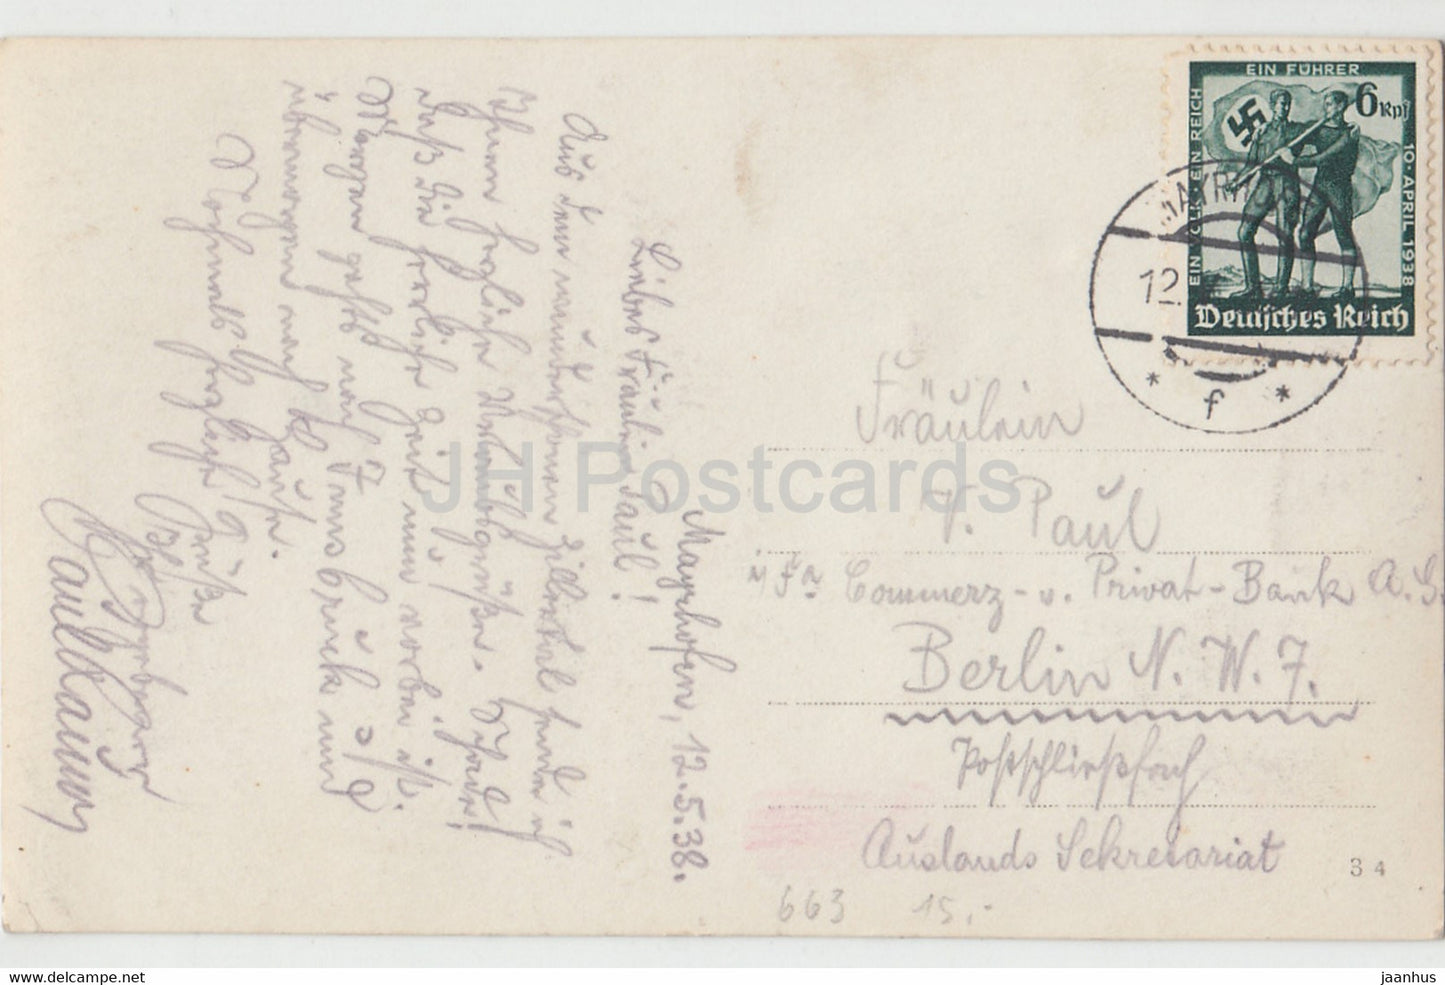 Mayrhofen 640 m - Zillertal - alte Postkarte - 1938 - Österreich - gebraucht